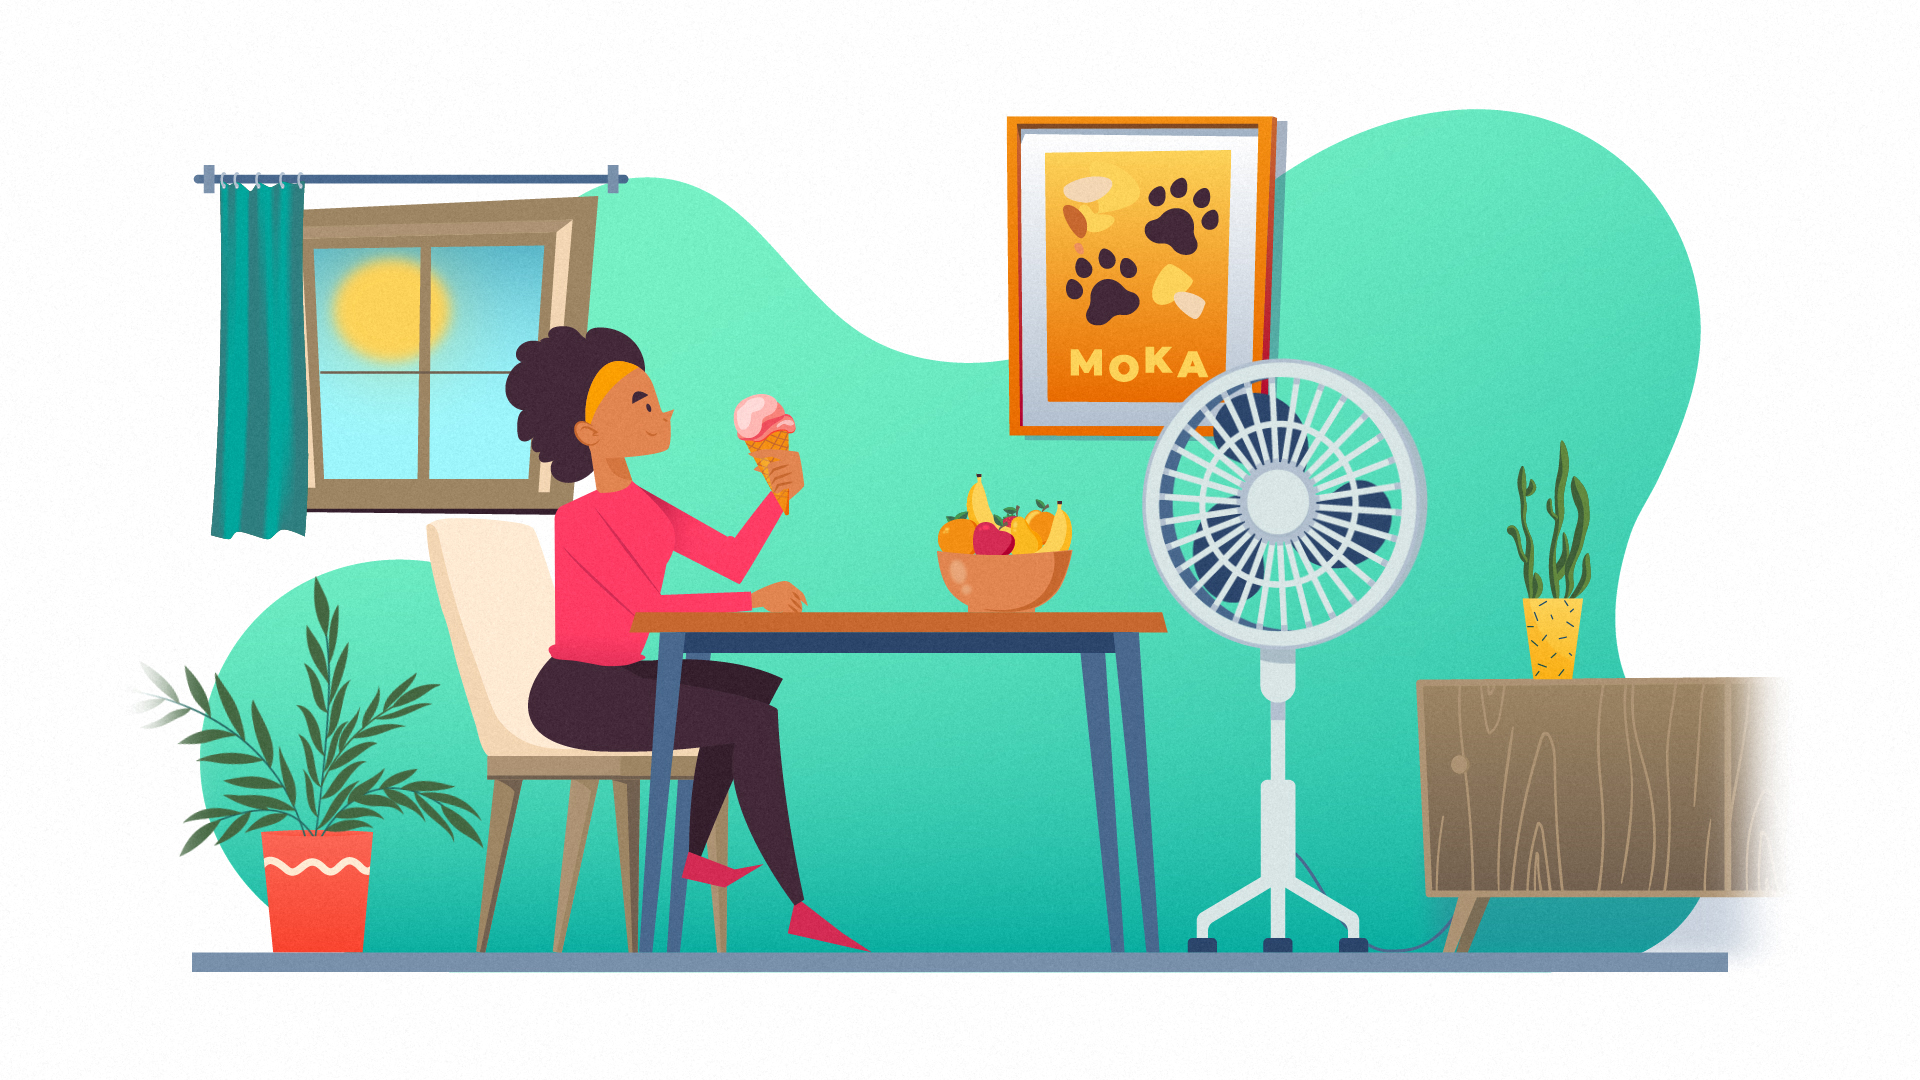 Personnage qui a chaud et mange une glace devant un ventilateur